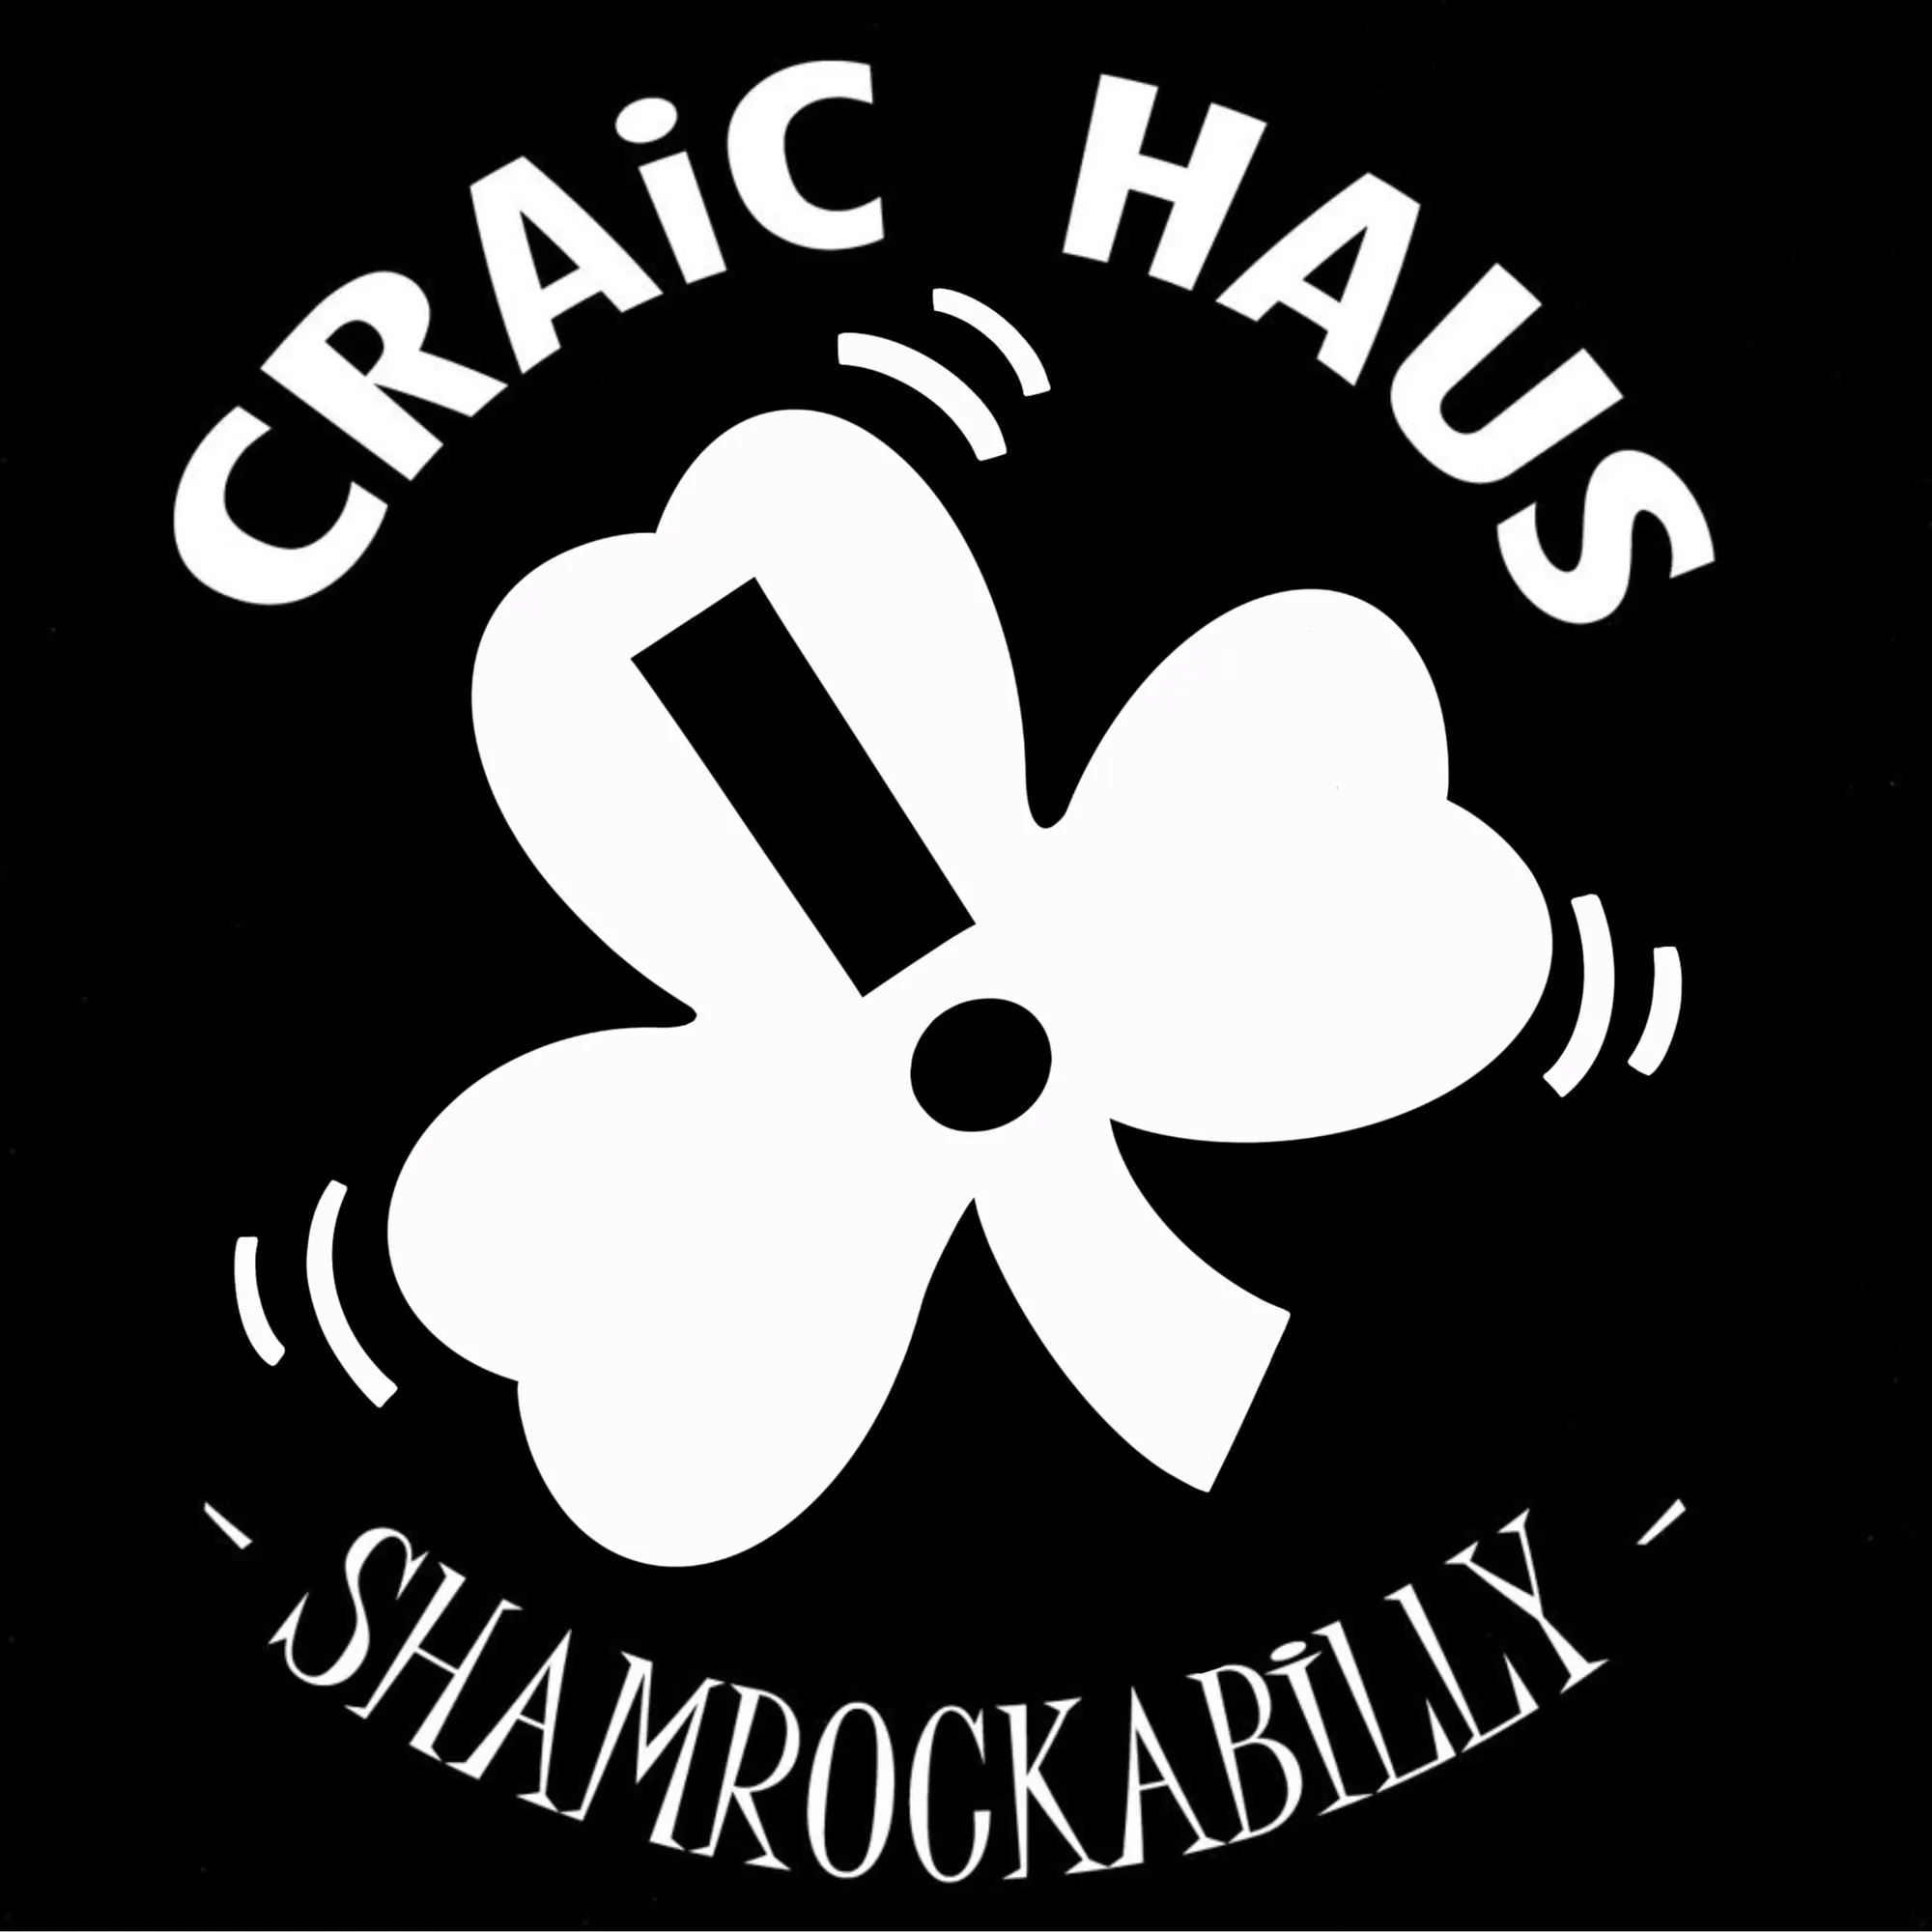 Live Music Craic Haus  – O’Sullivan’s Irish Pub